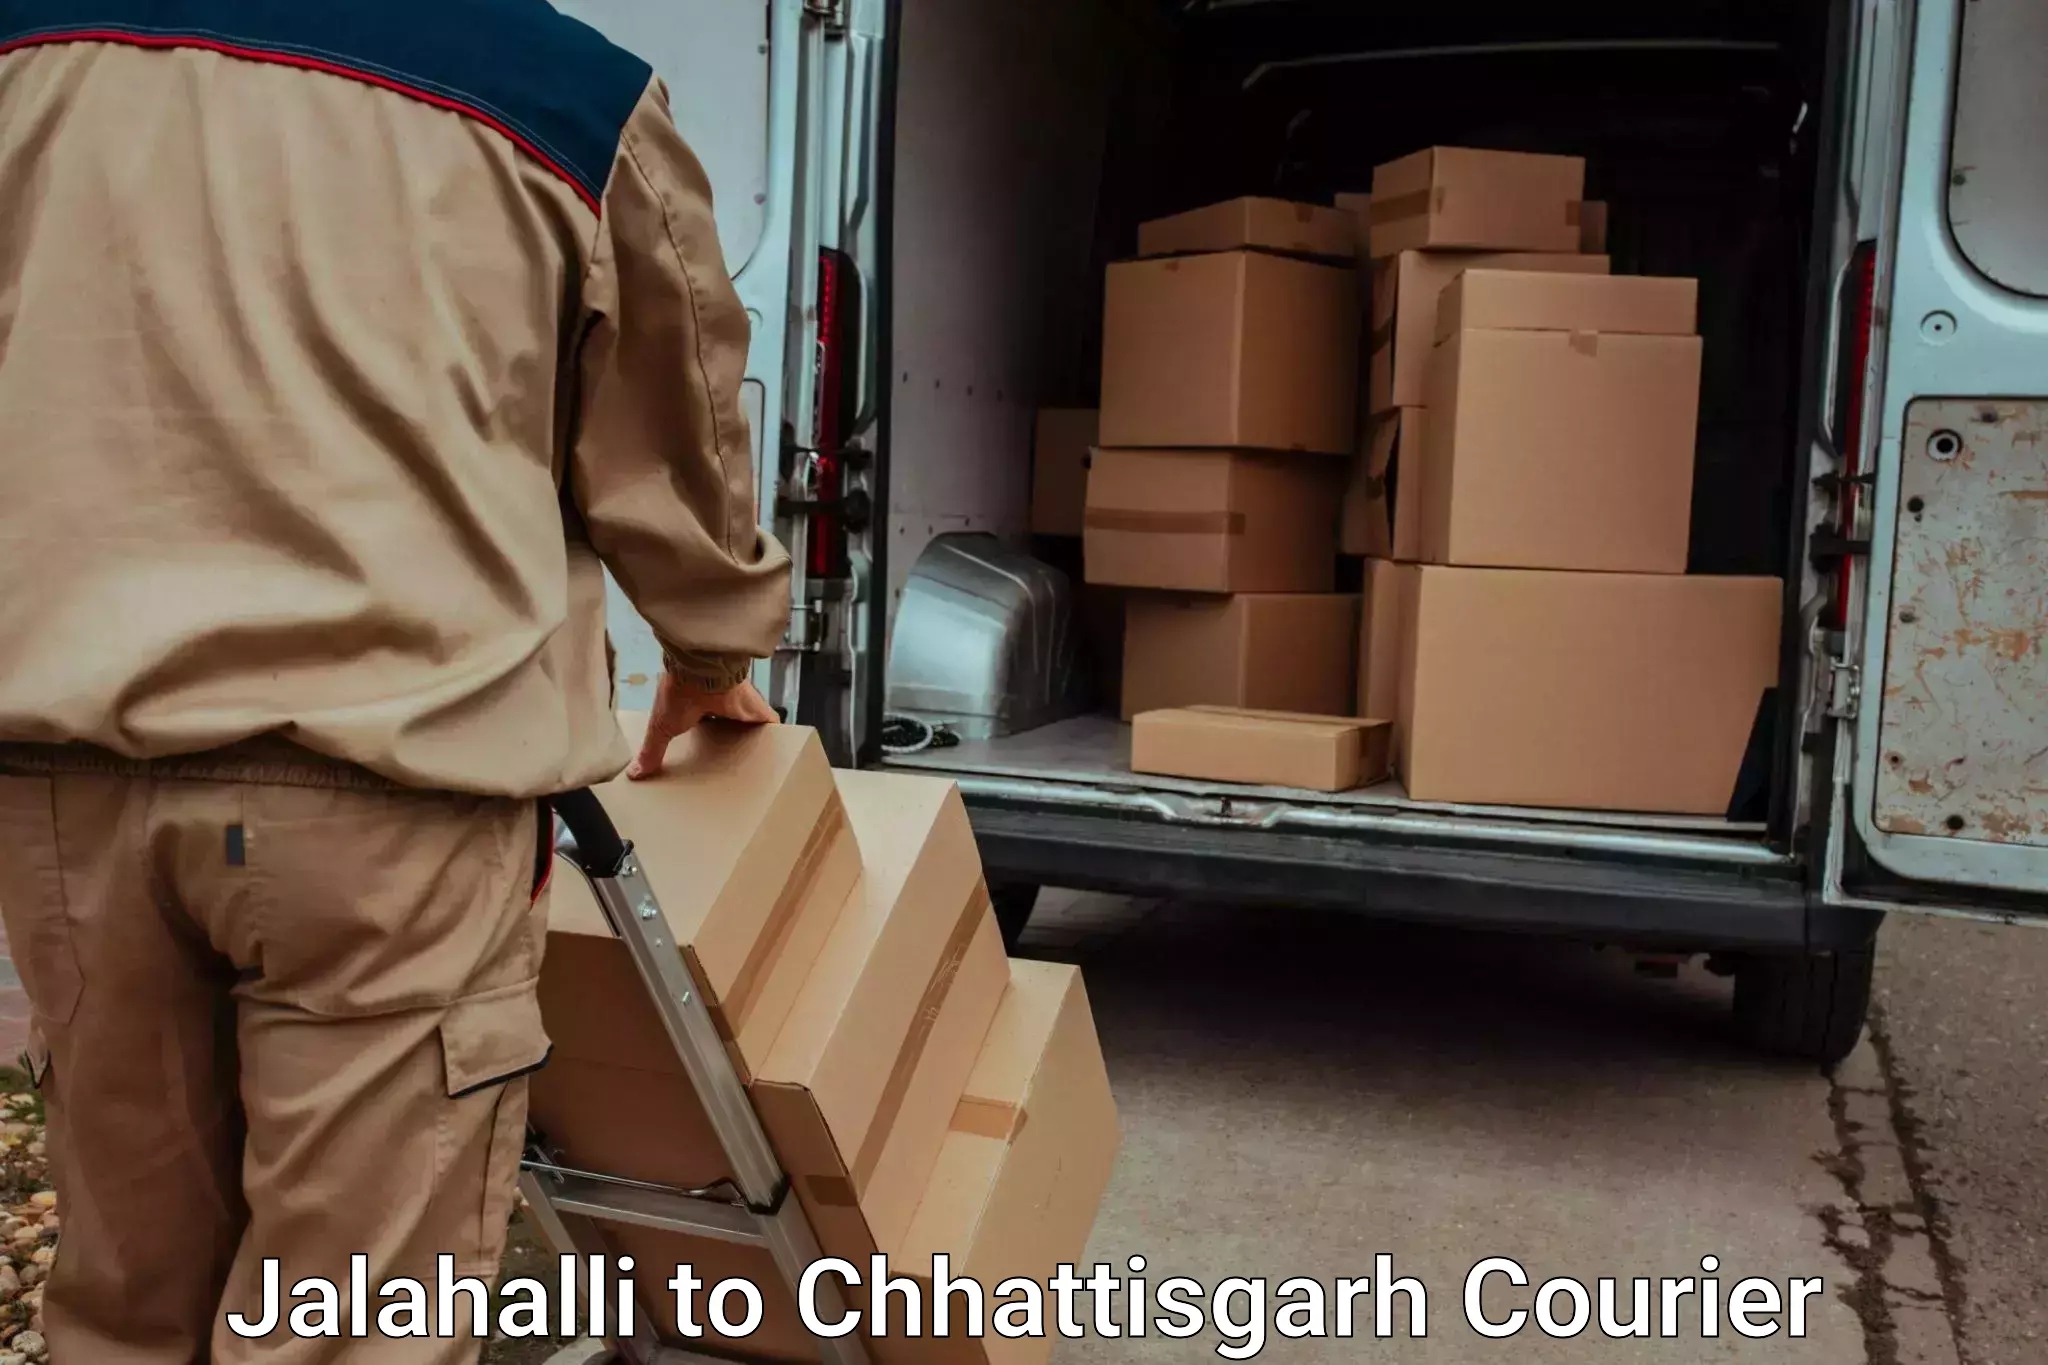 Trusted relocation experts Jalahalli to Sarangarh